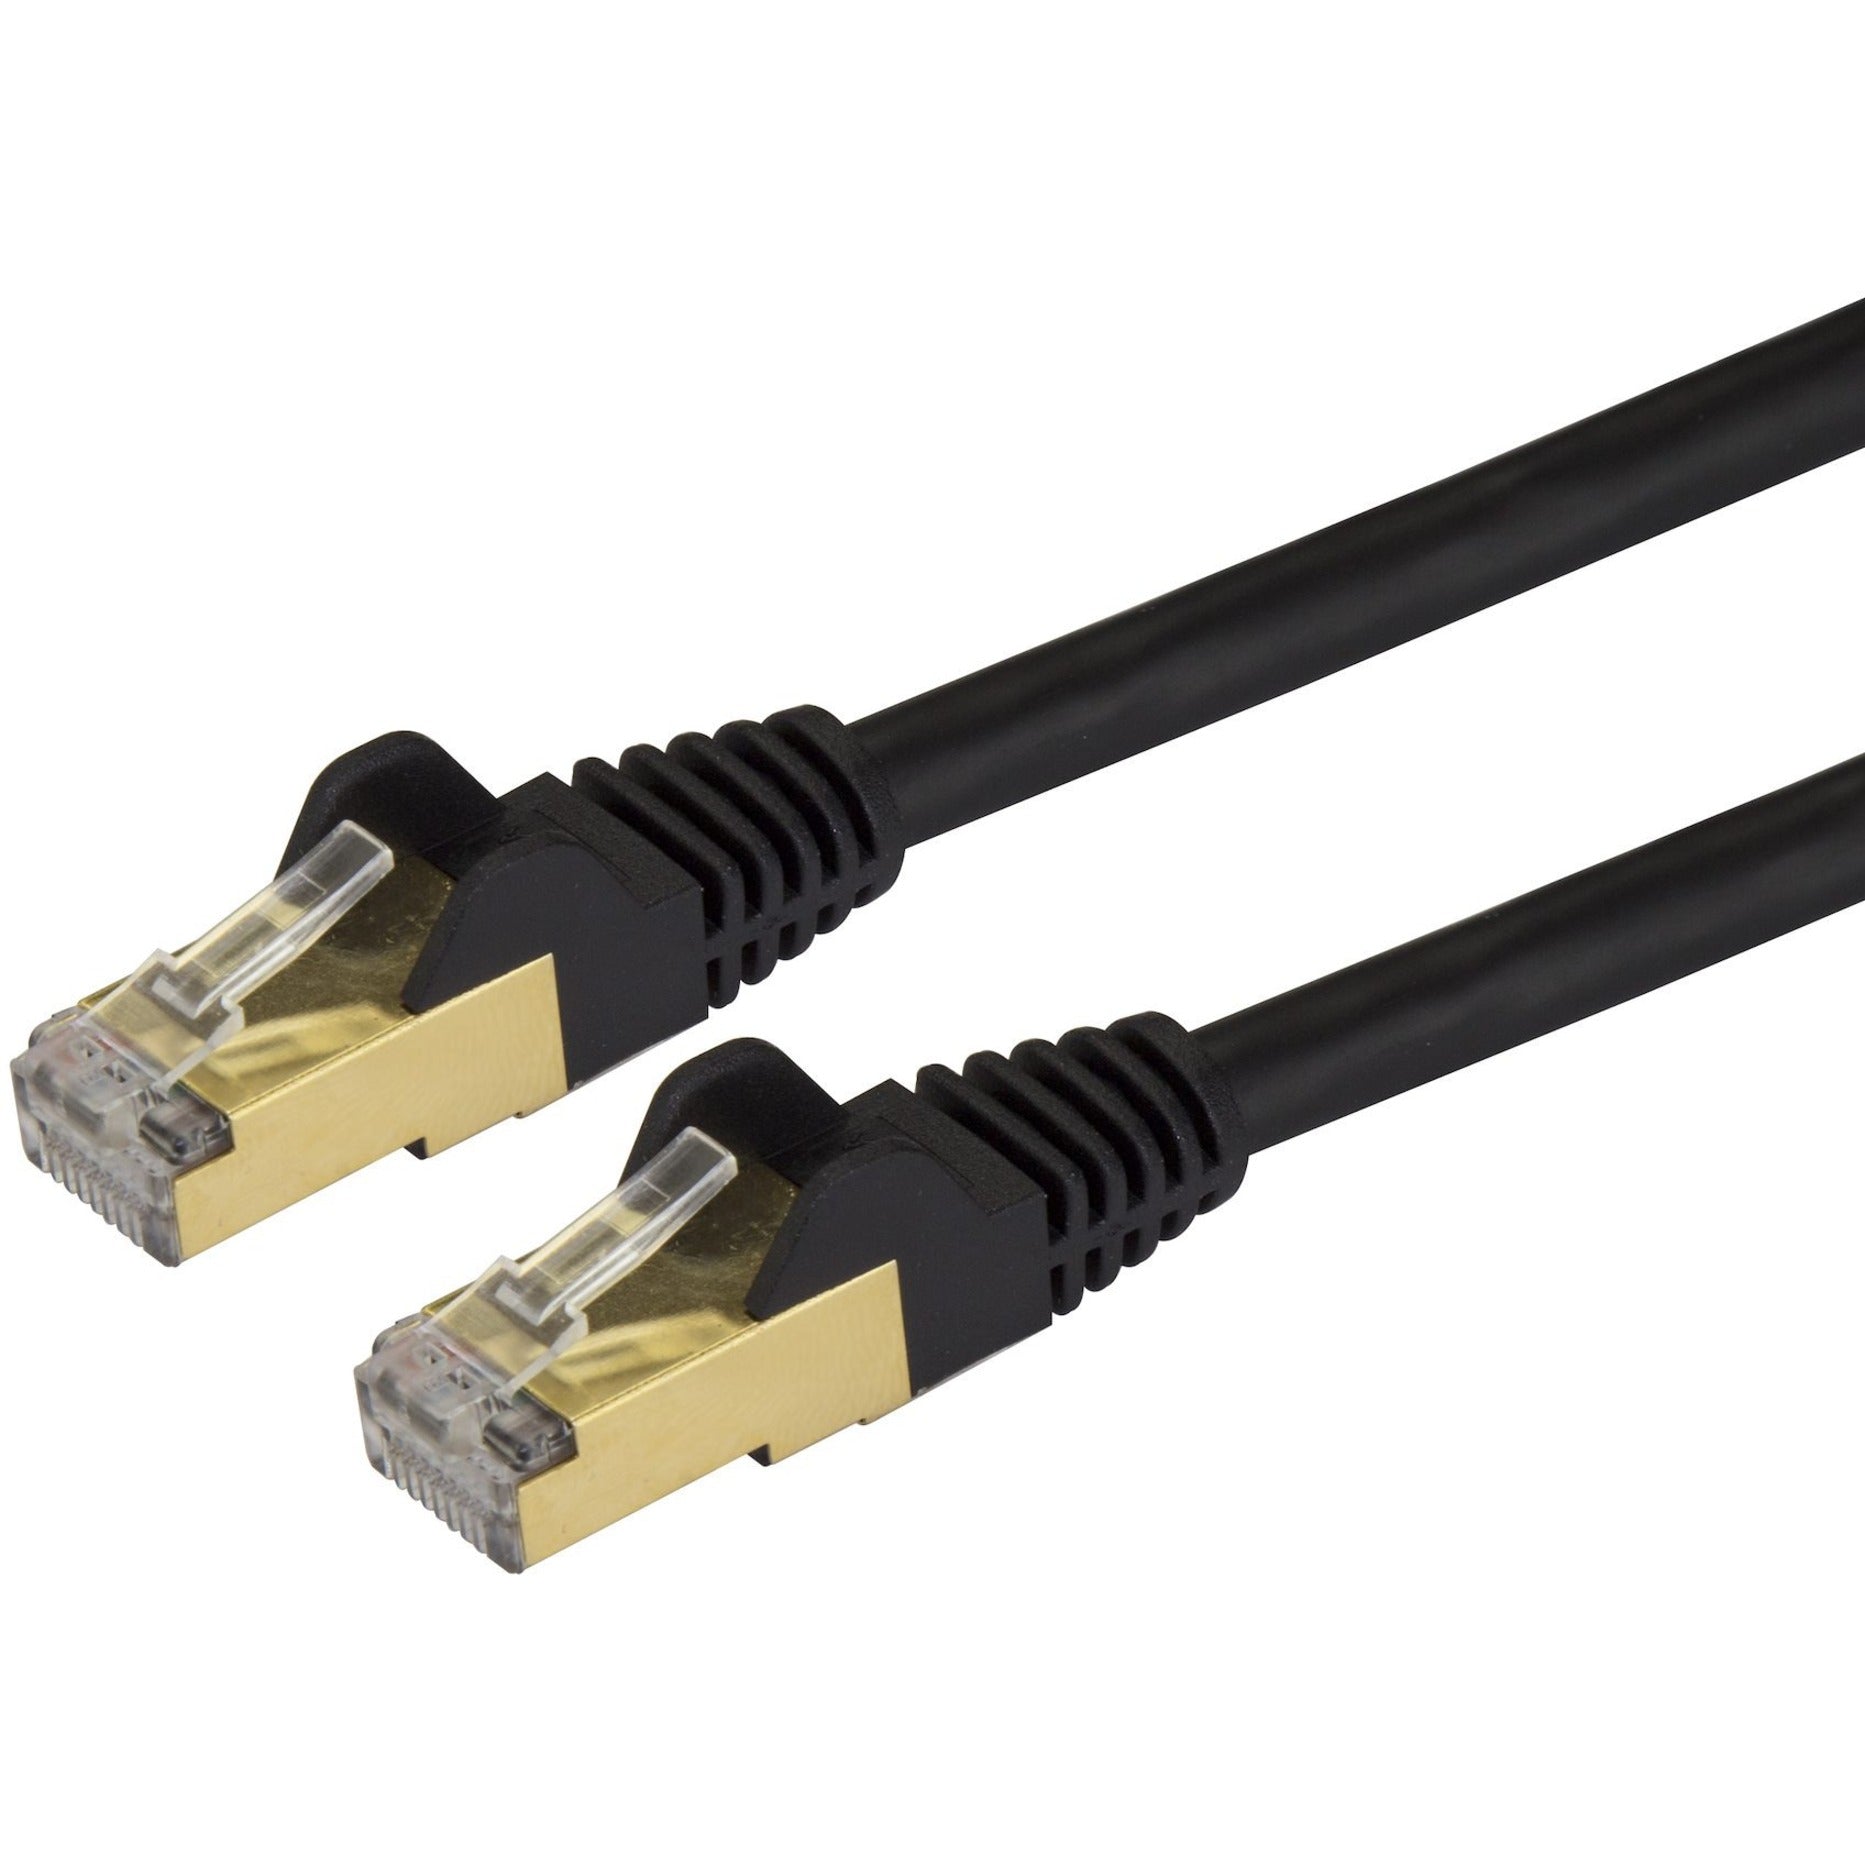 StarTech.com C6ASPAT30BK Cat6a Ethernet Patch Cable - Shielded (STP) - 30 ft., Black, Long Ethernet Cord